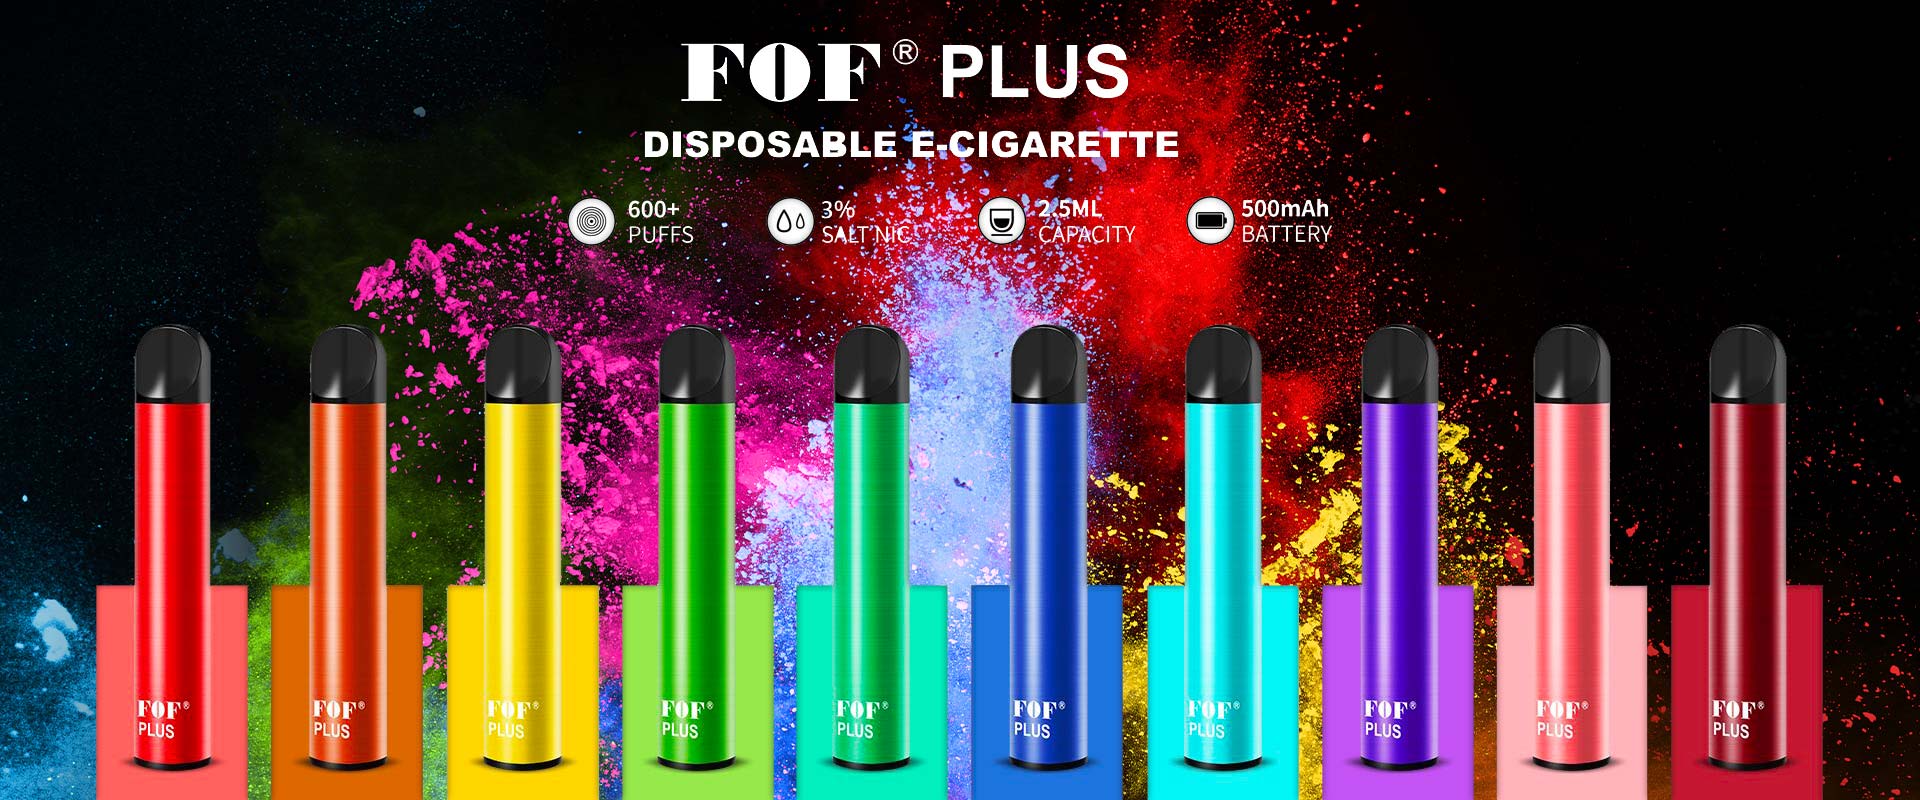 FOF PLUS บุหรี่ไฟฟ้าแบบใช้แล้วทิ้ง disposable ราคาถูก ราคาส่ง | Podhubthai